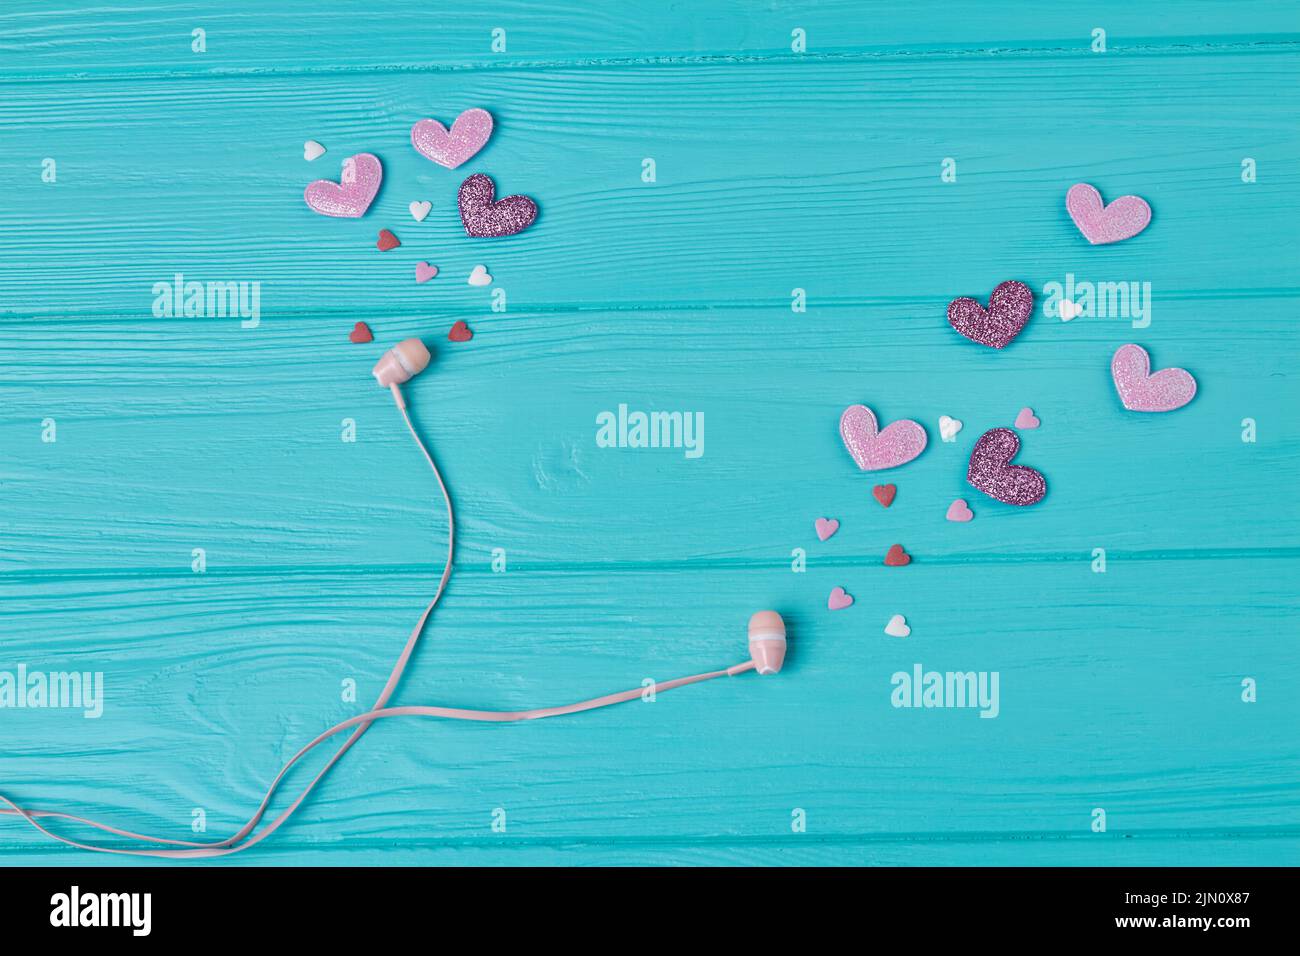 Auriculares con corazones rosas y moradas sobre madera azul. Amor por el concepto de música. Foto de stock